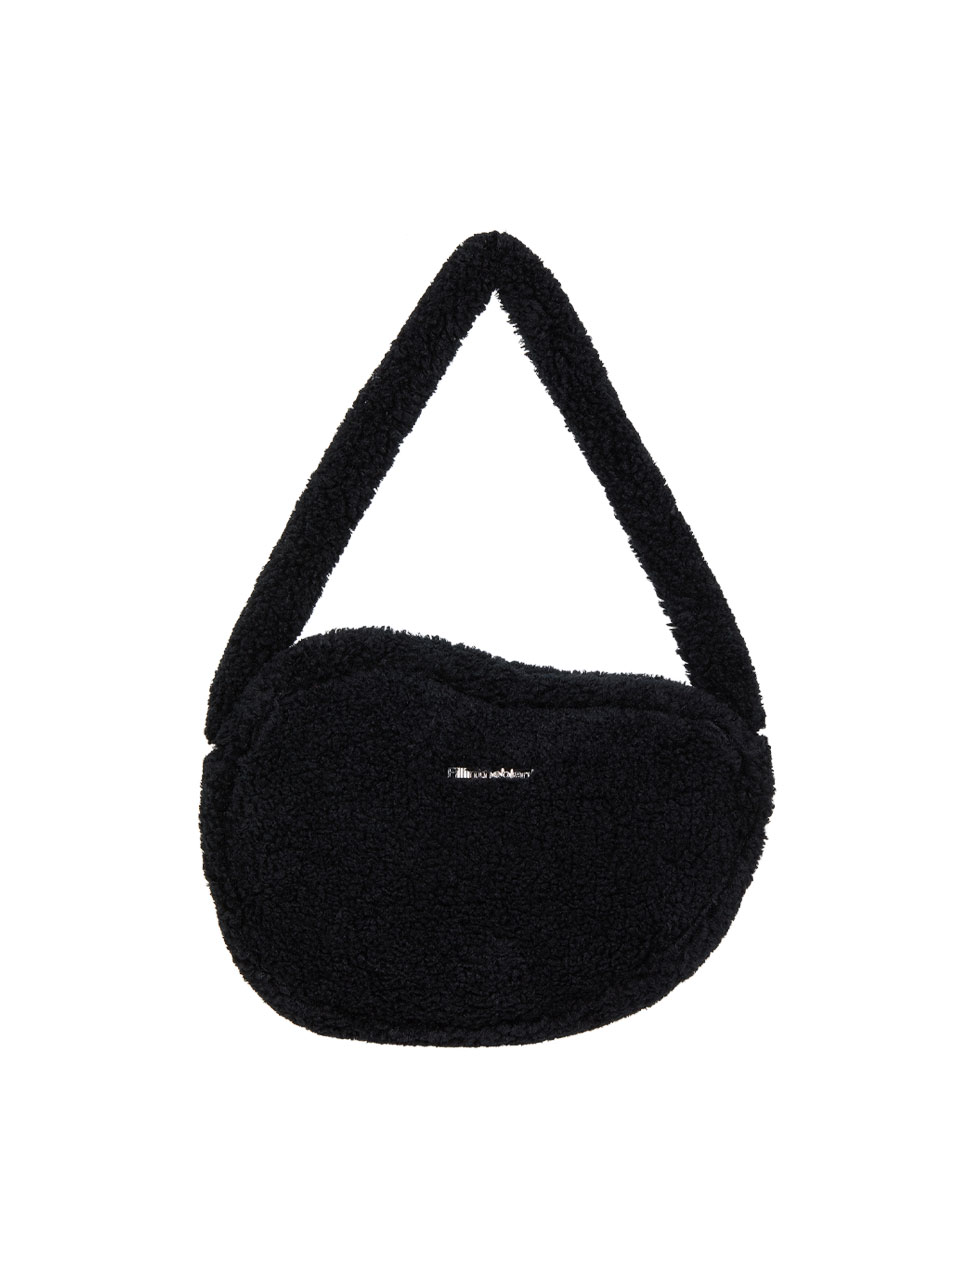 Furry Shoulder Bag (black)